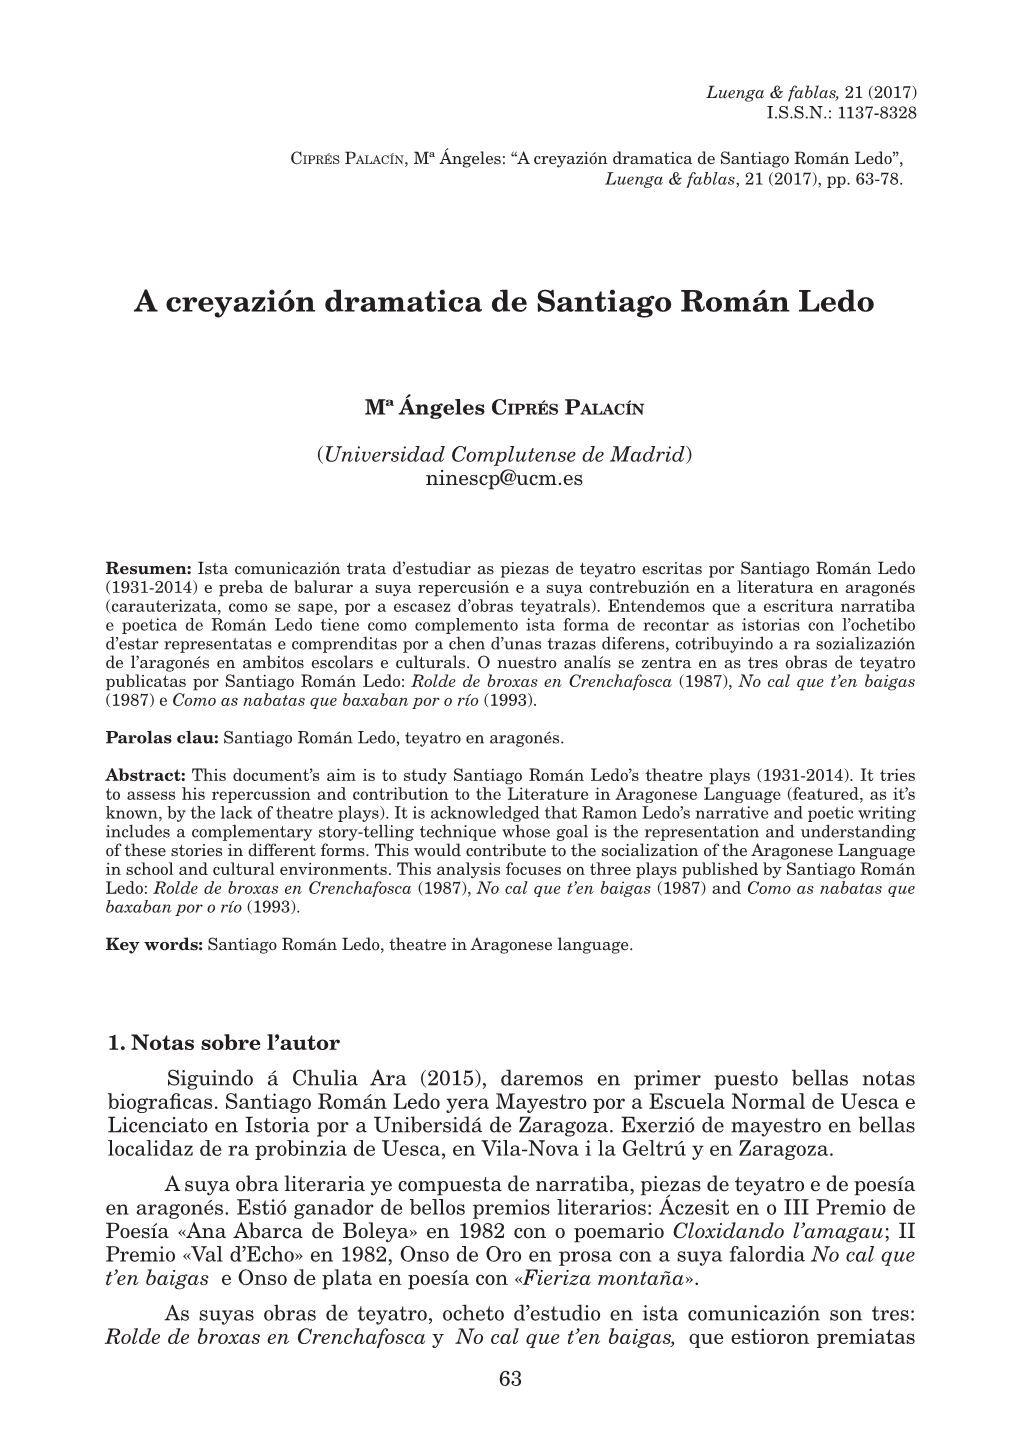 A Creyazión Dramatica De Santiago Román Ledo”, Luenga & Fablas, 21 (2017), Pp